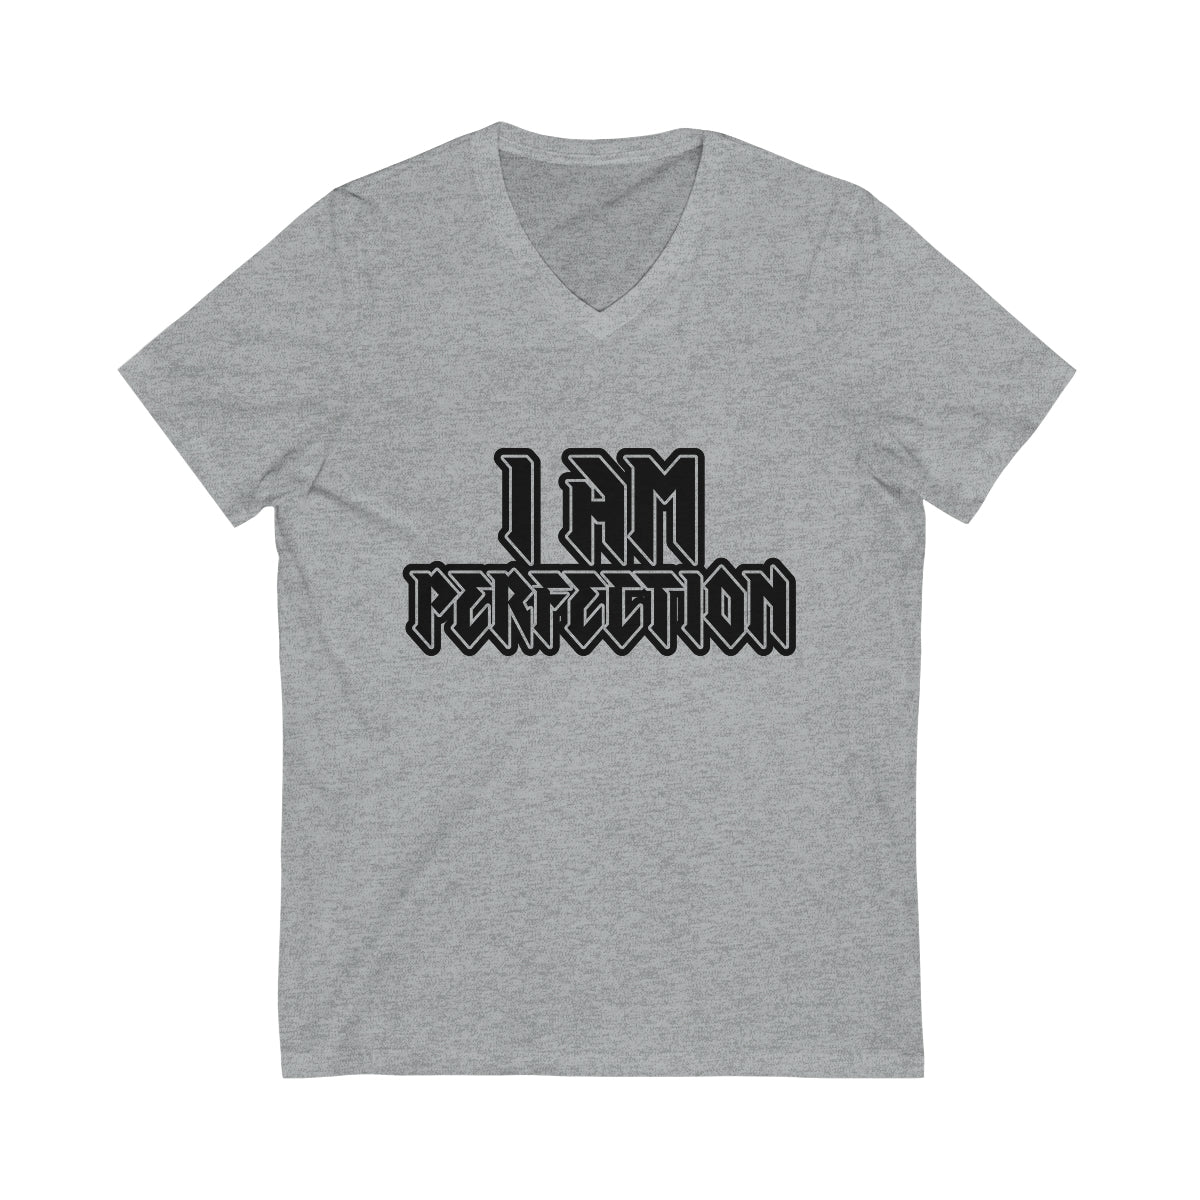 Affirmation Feminist Pro Choice T-Shirt Unisex Size - I am Perfection Printify